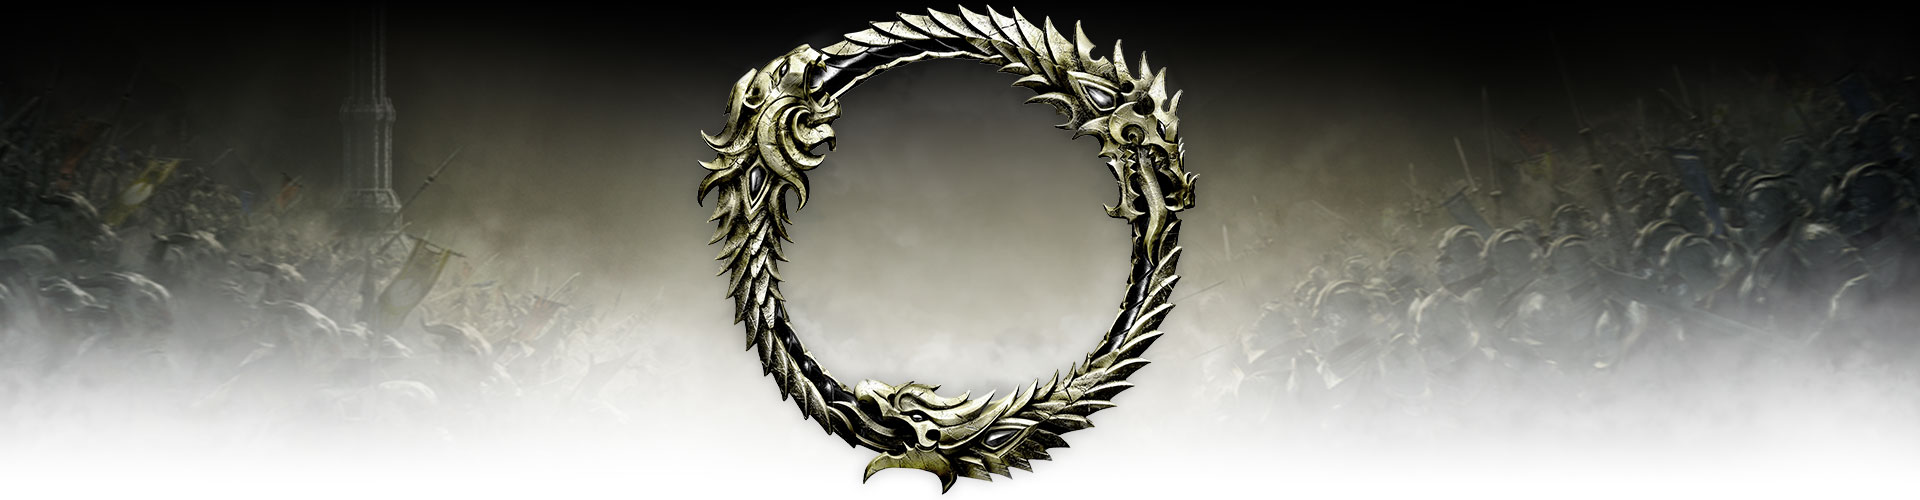 Metallinen ouroboros-symboli raivoavan taistelukentän päällä.